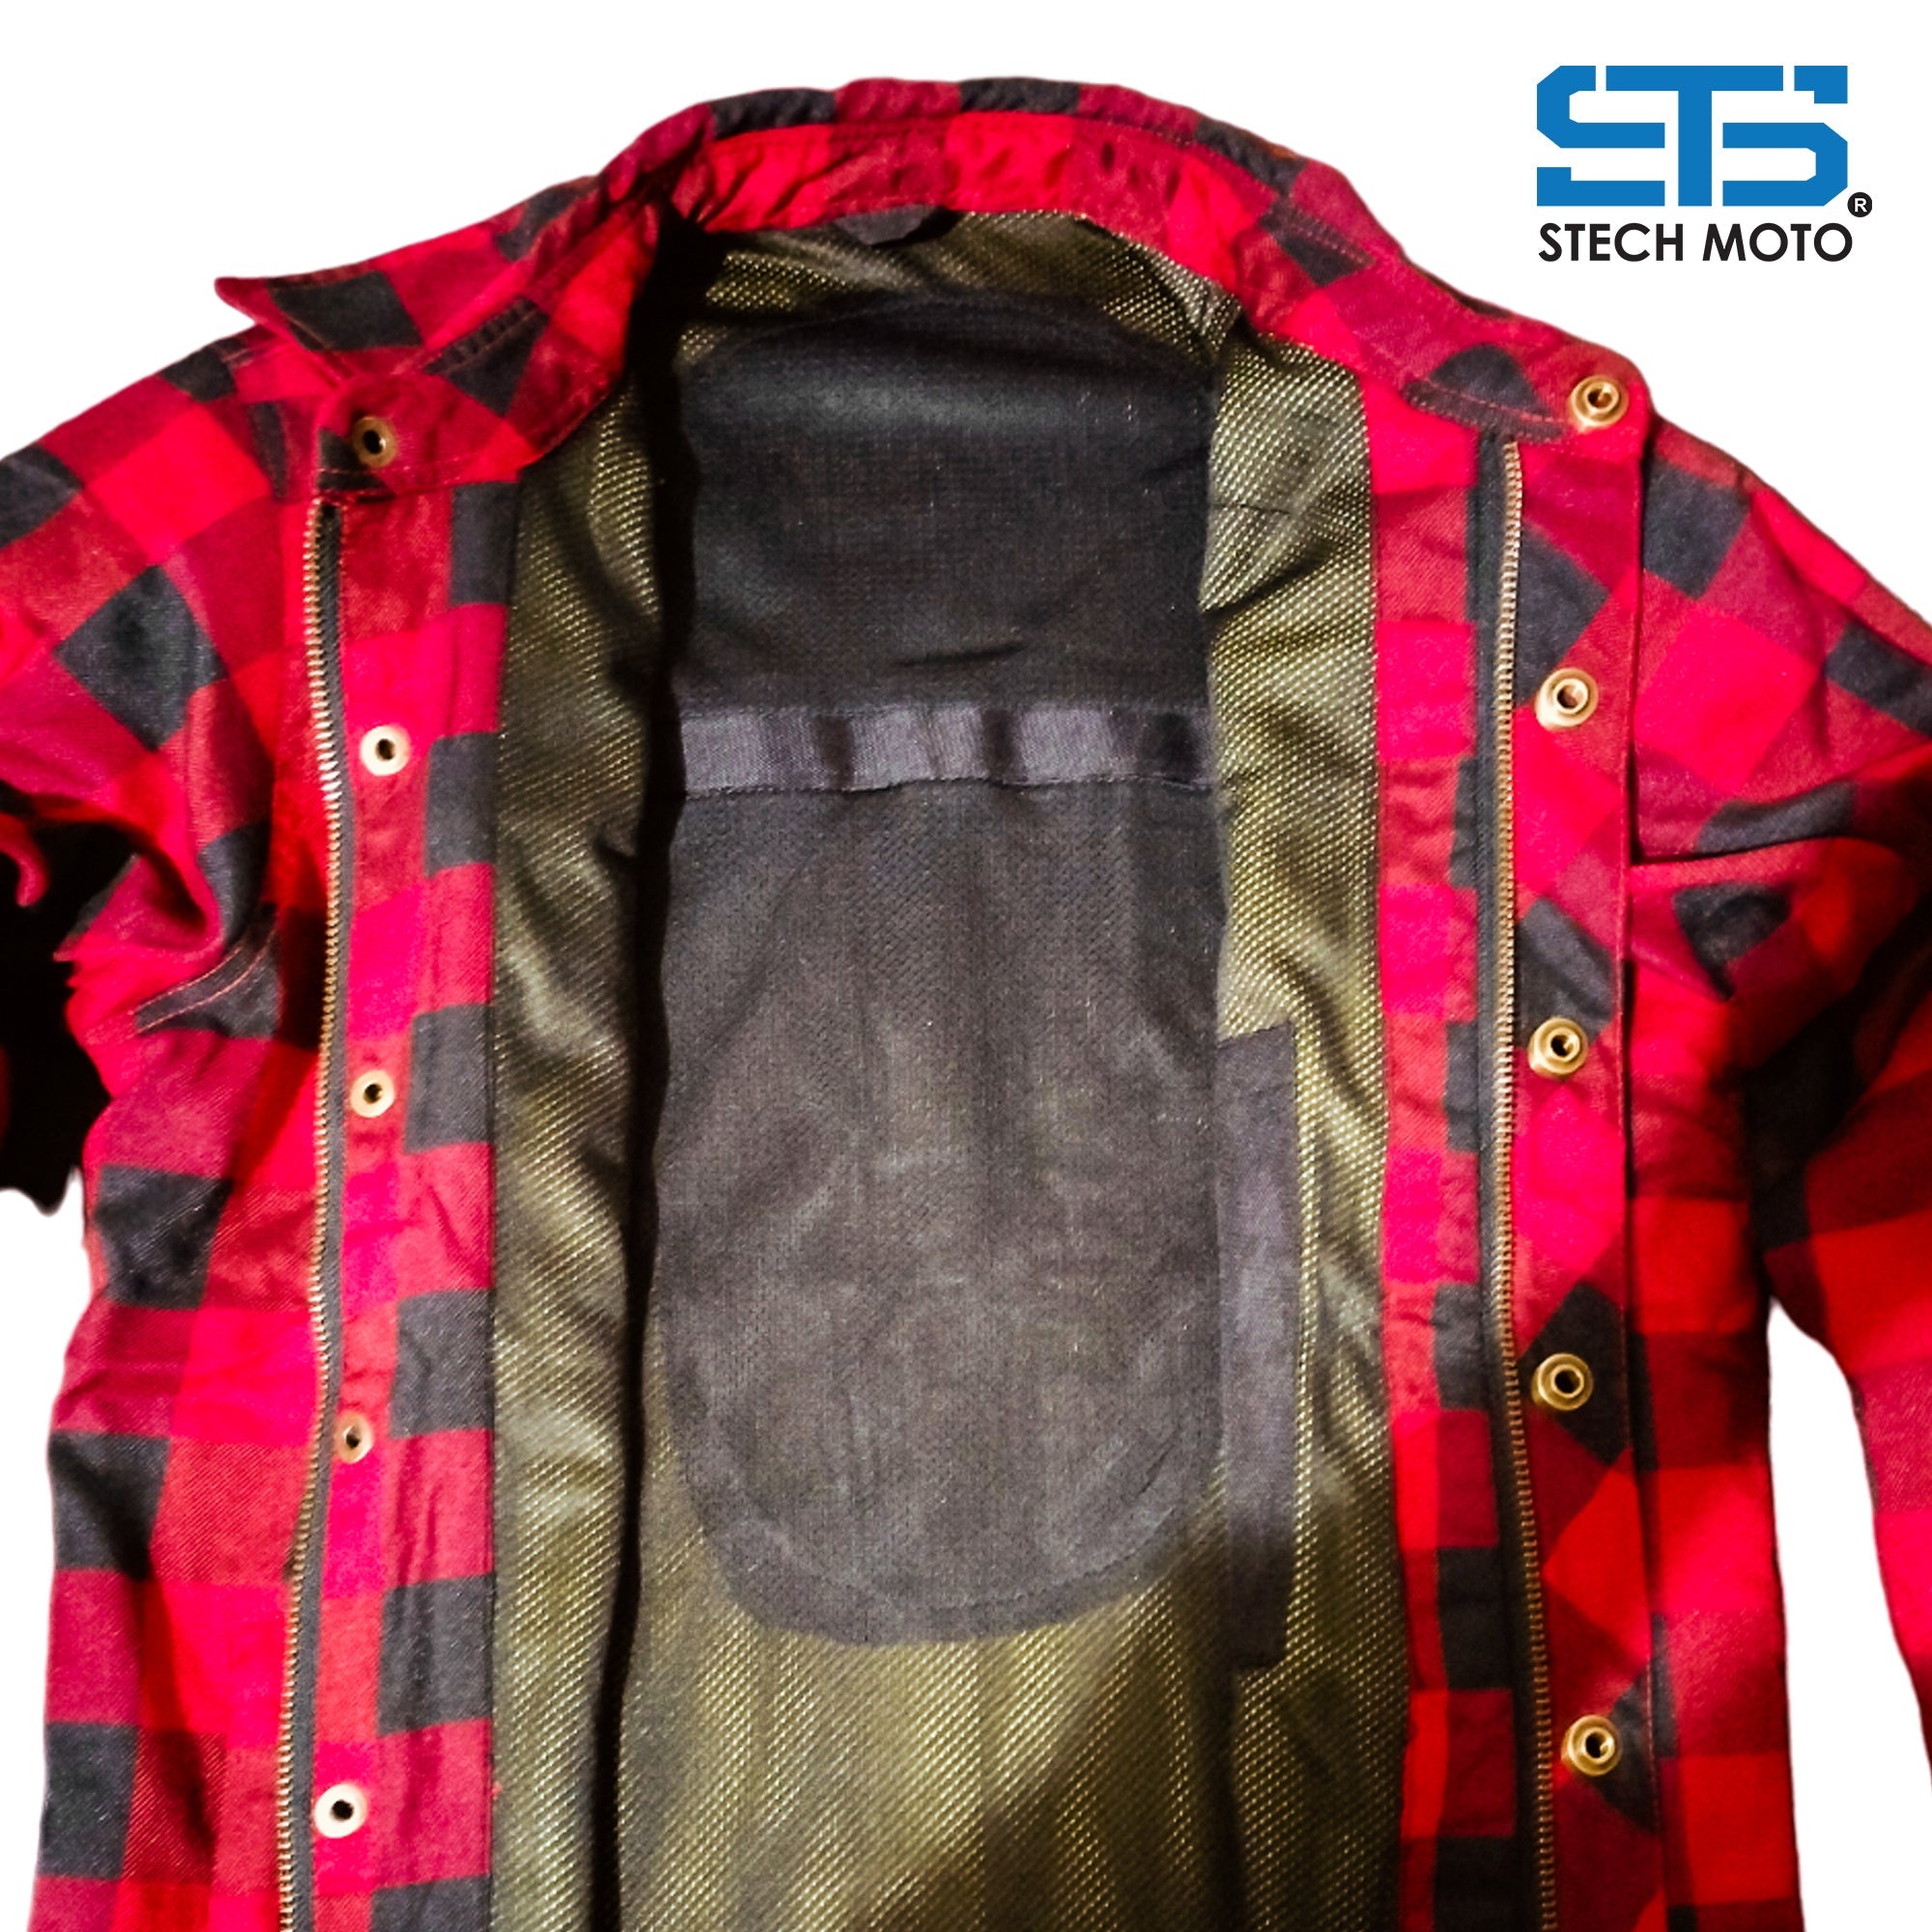 Moto camicia contone-flanella da uomo Stechmoto con aramid e protezione CE livello-1 ST